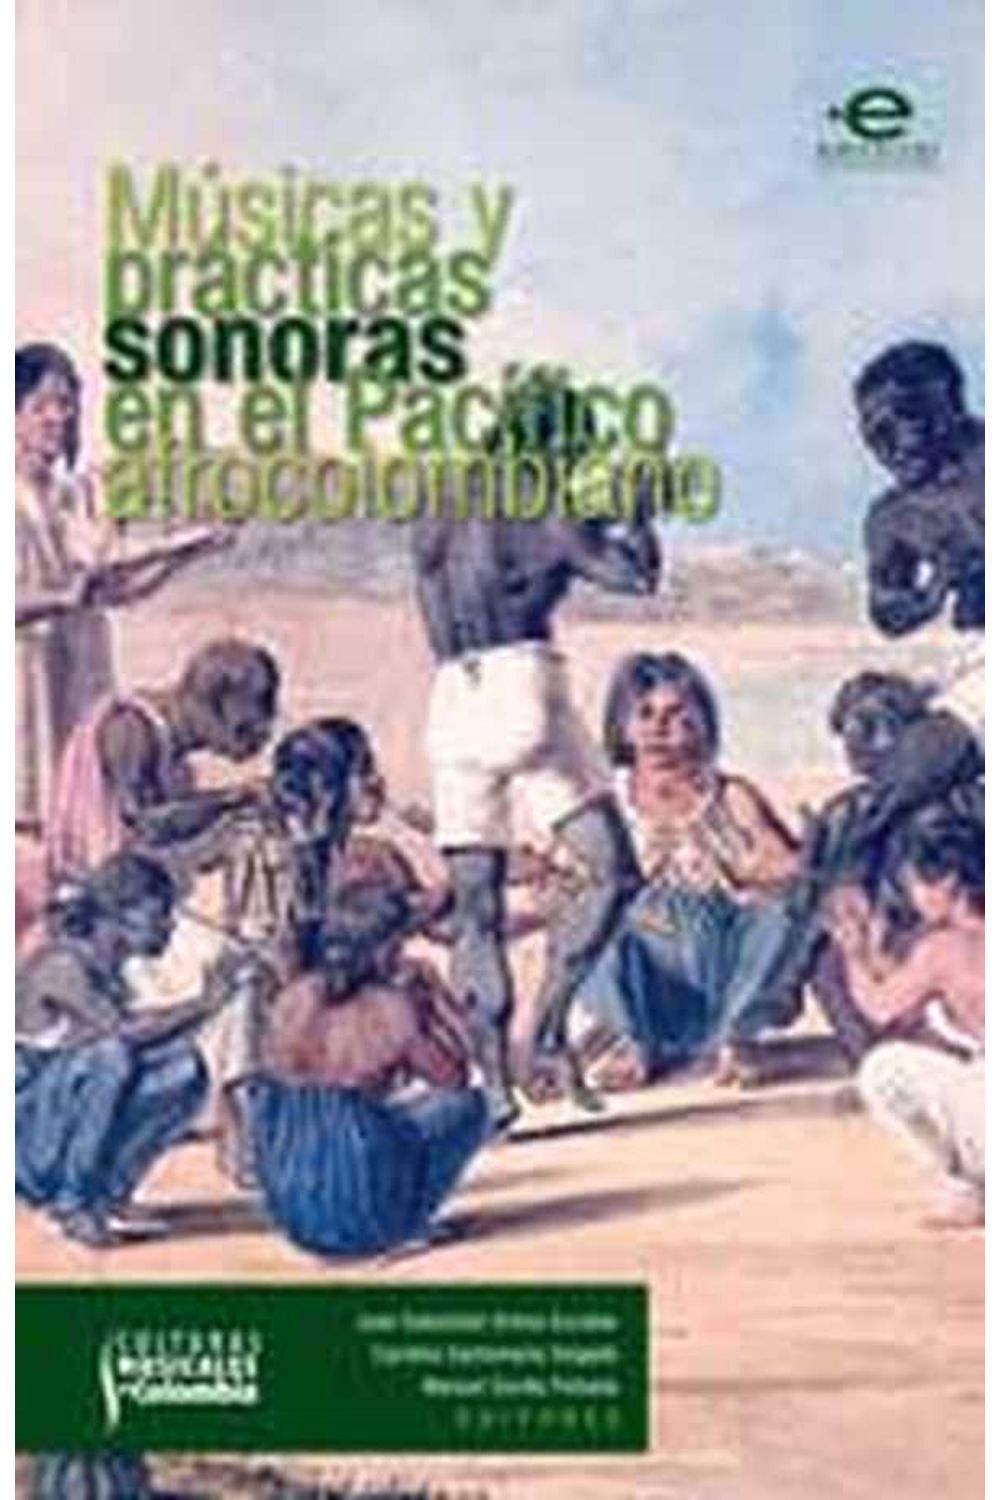 bw-muacutesicas-y-praacutecticas-en-el-paciacutefico-afrocolombiano-editorial-pontificia-universidad-javeriana-9789587166606